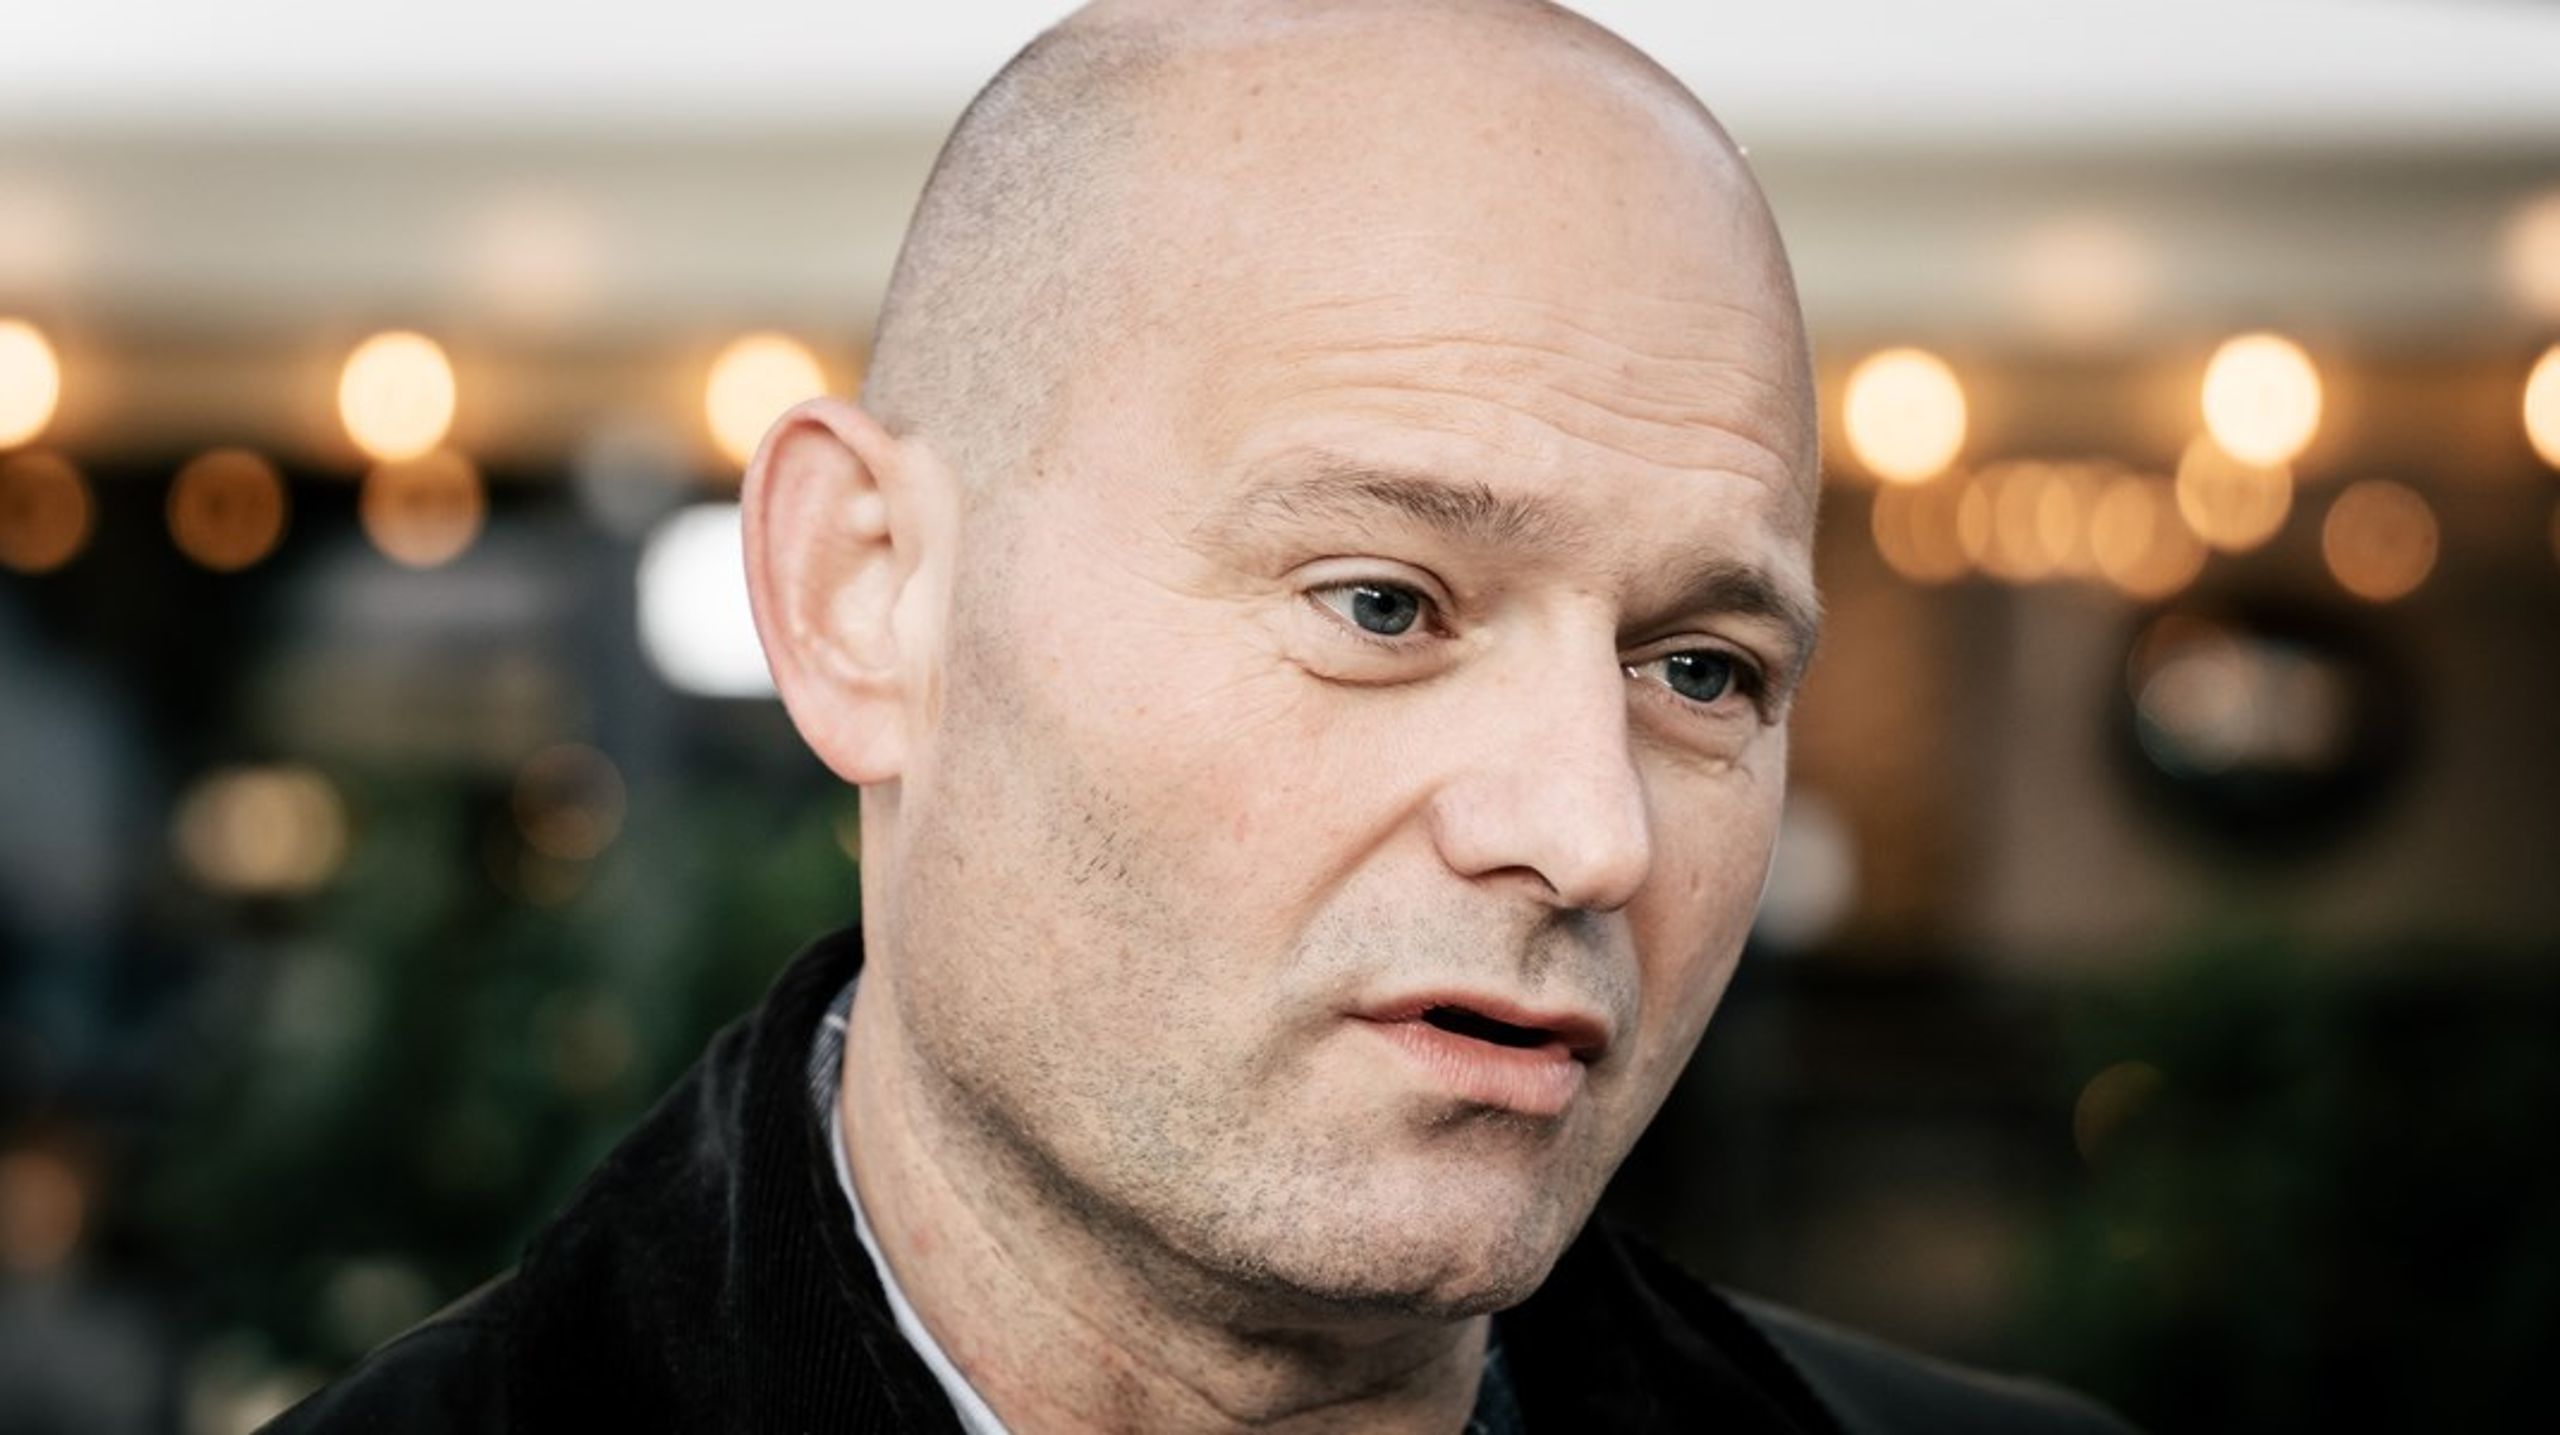 Lederen av Det Konservative Folkeparti, Søren Pape Poulsen (52), døde lørdag.